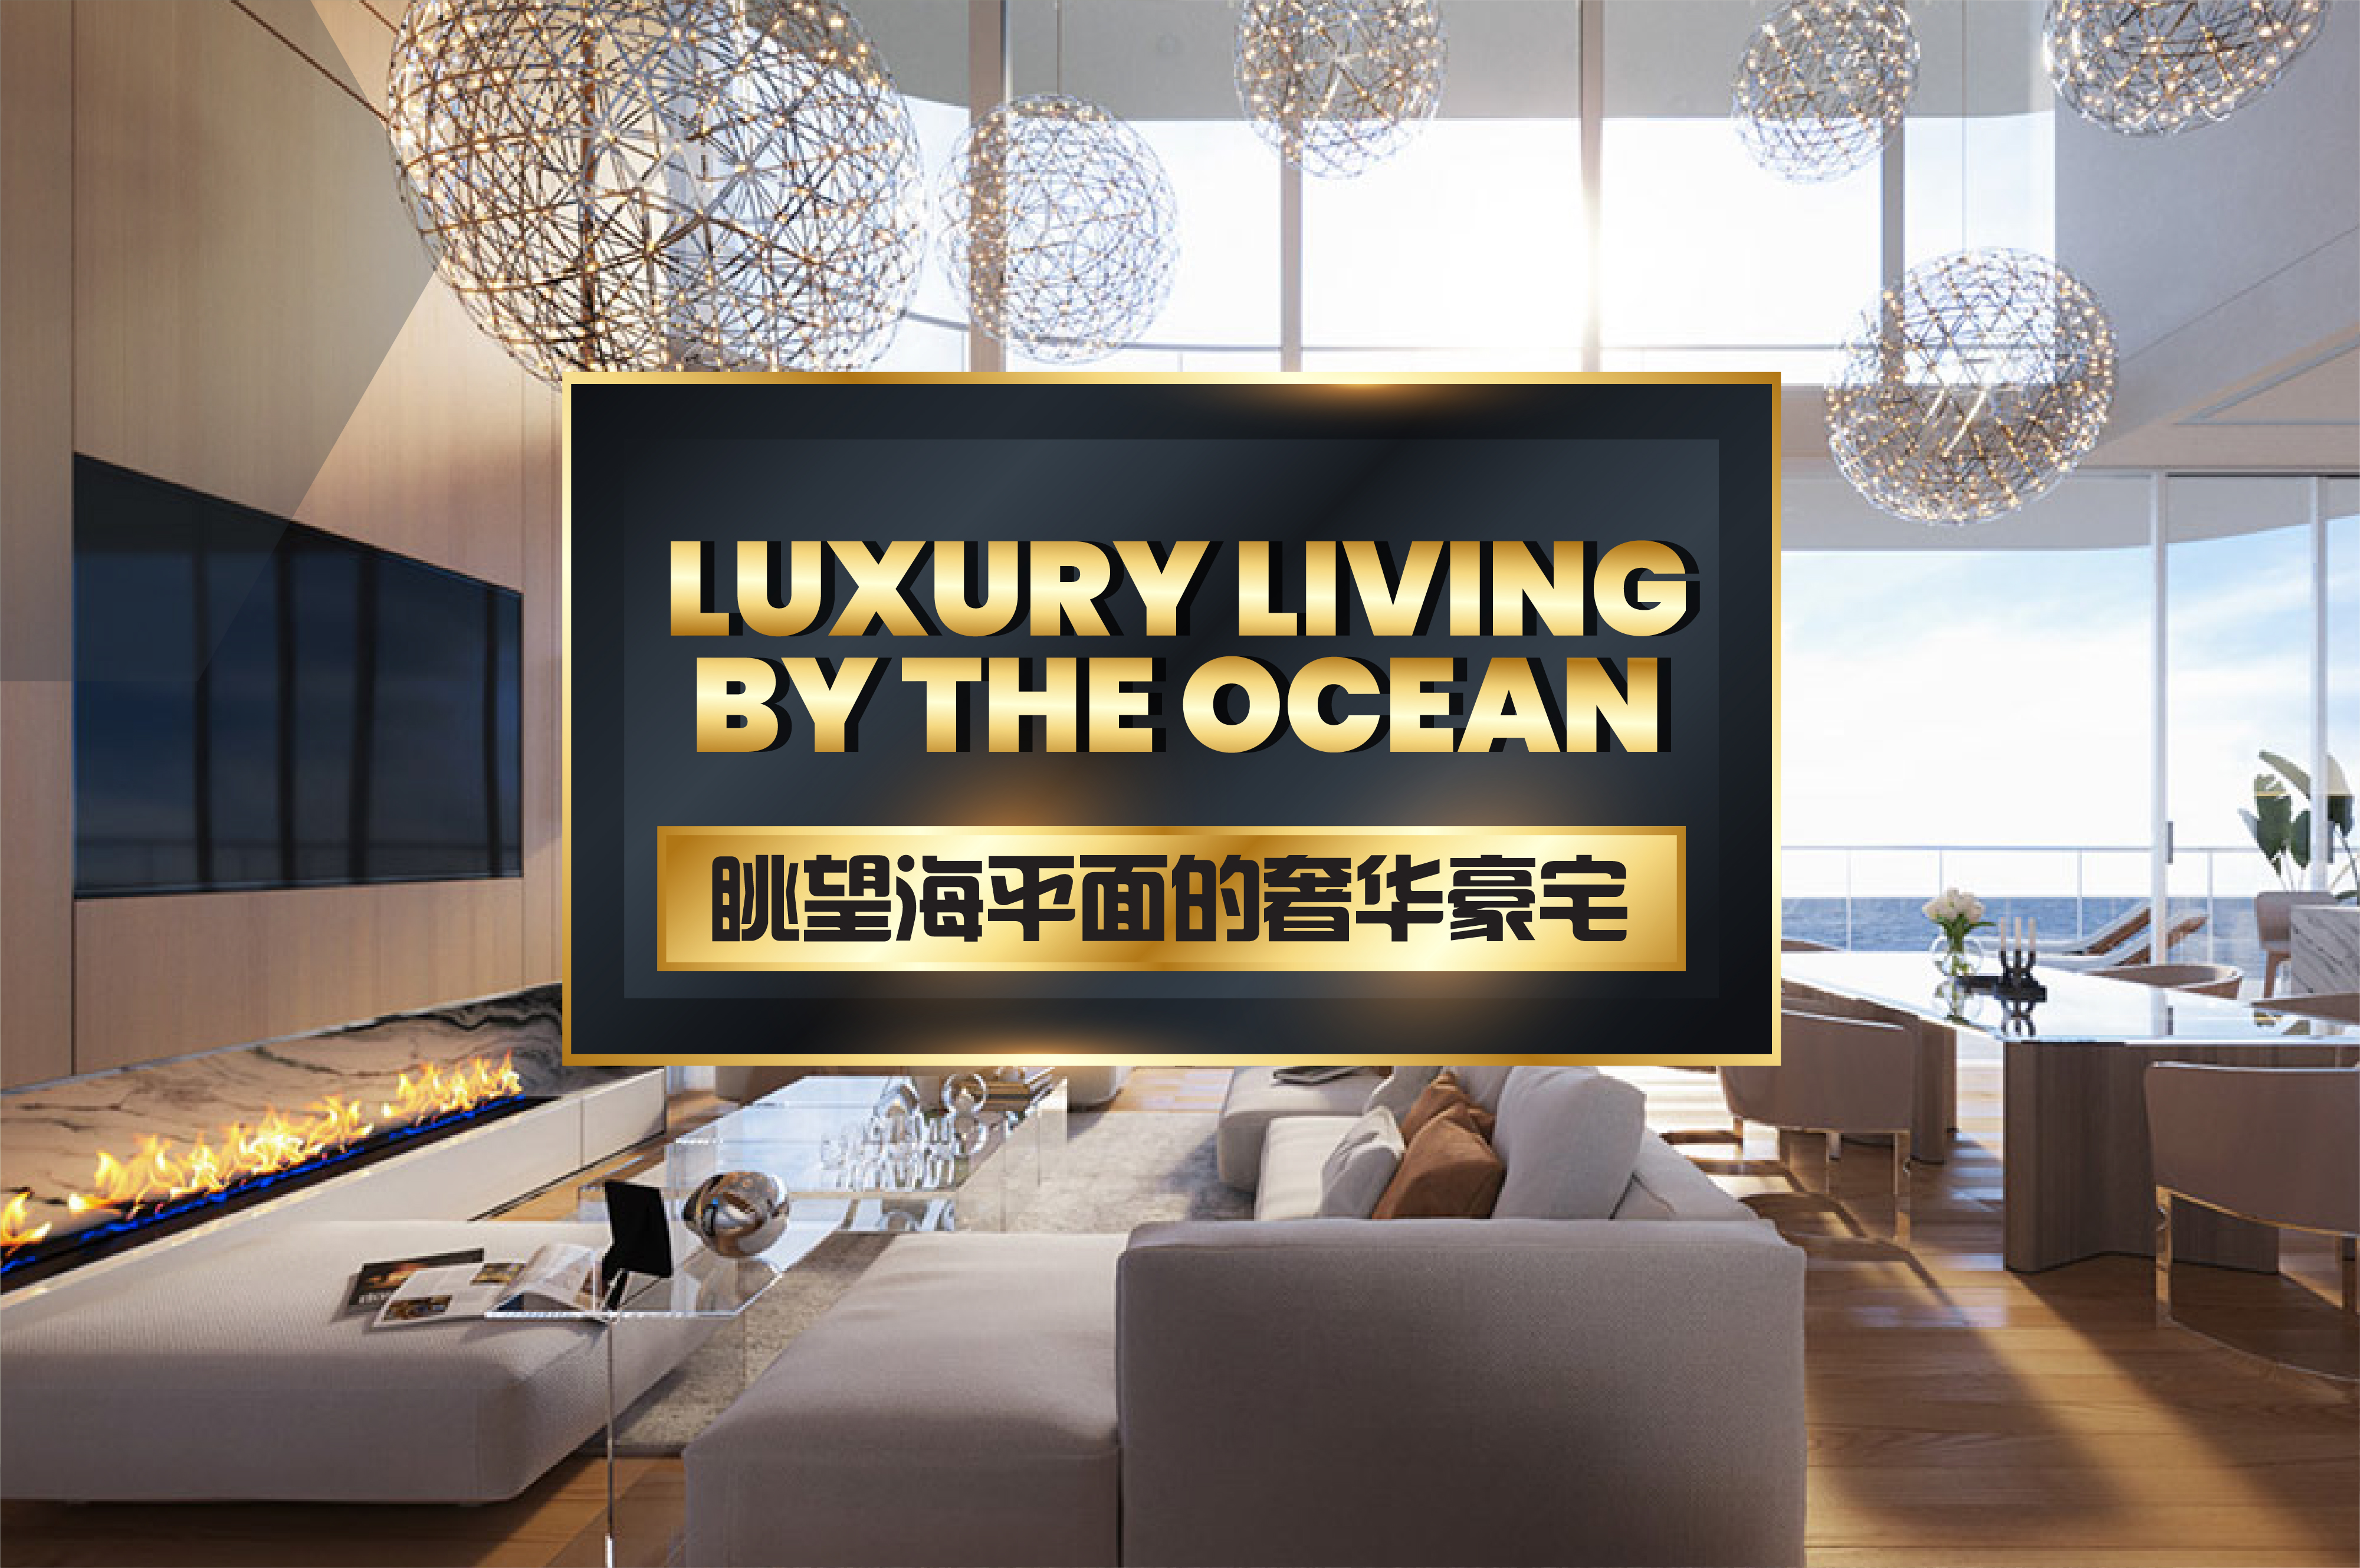 Luxury Living By The Ocean 眺望海平面的奢华豪宅